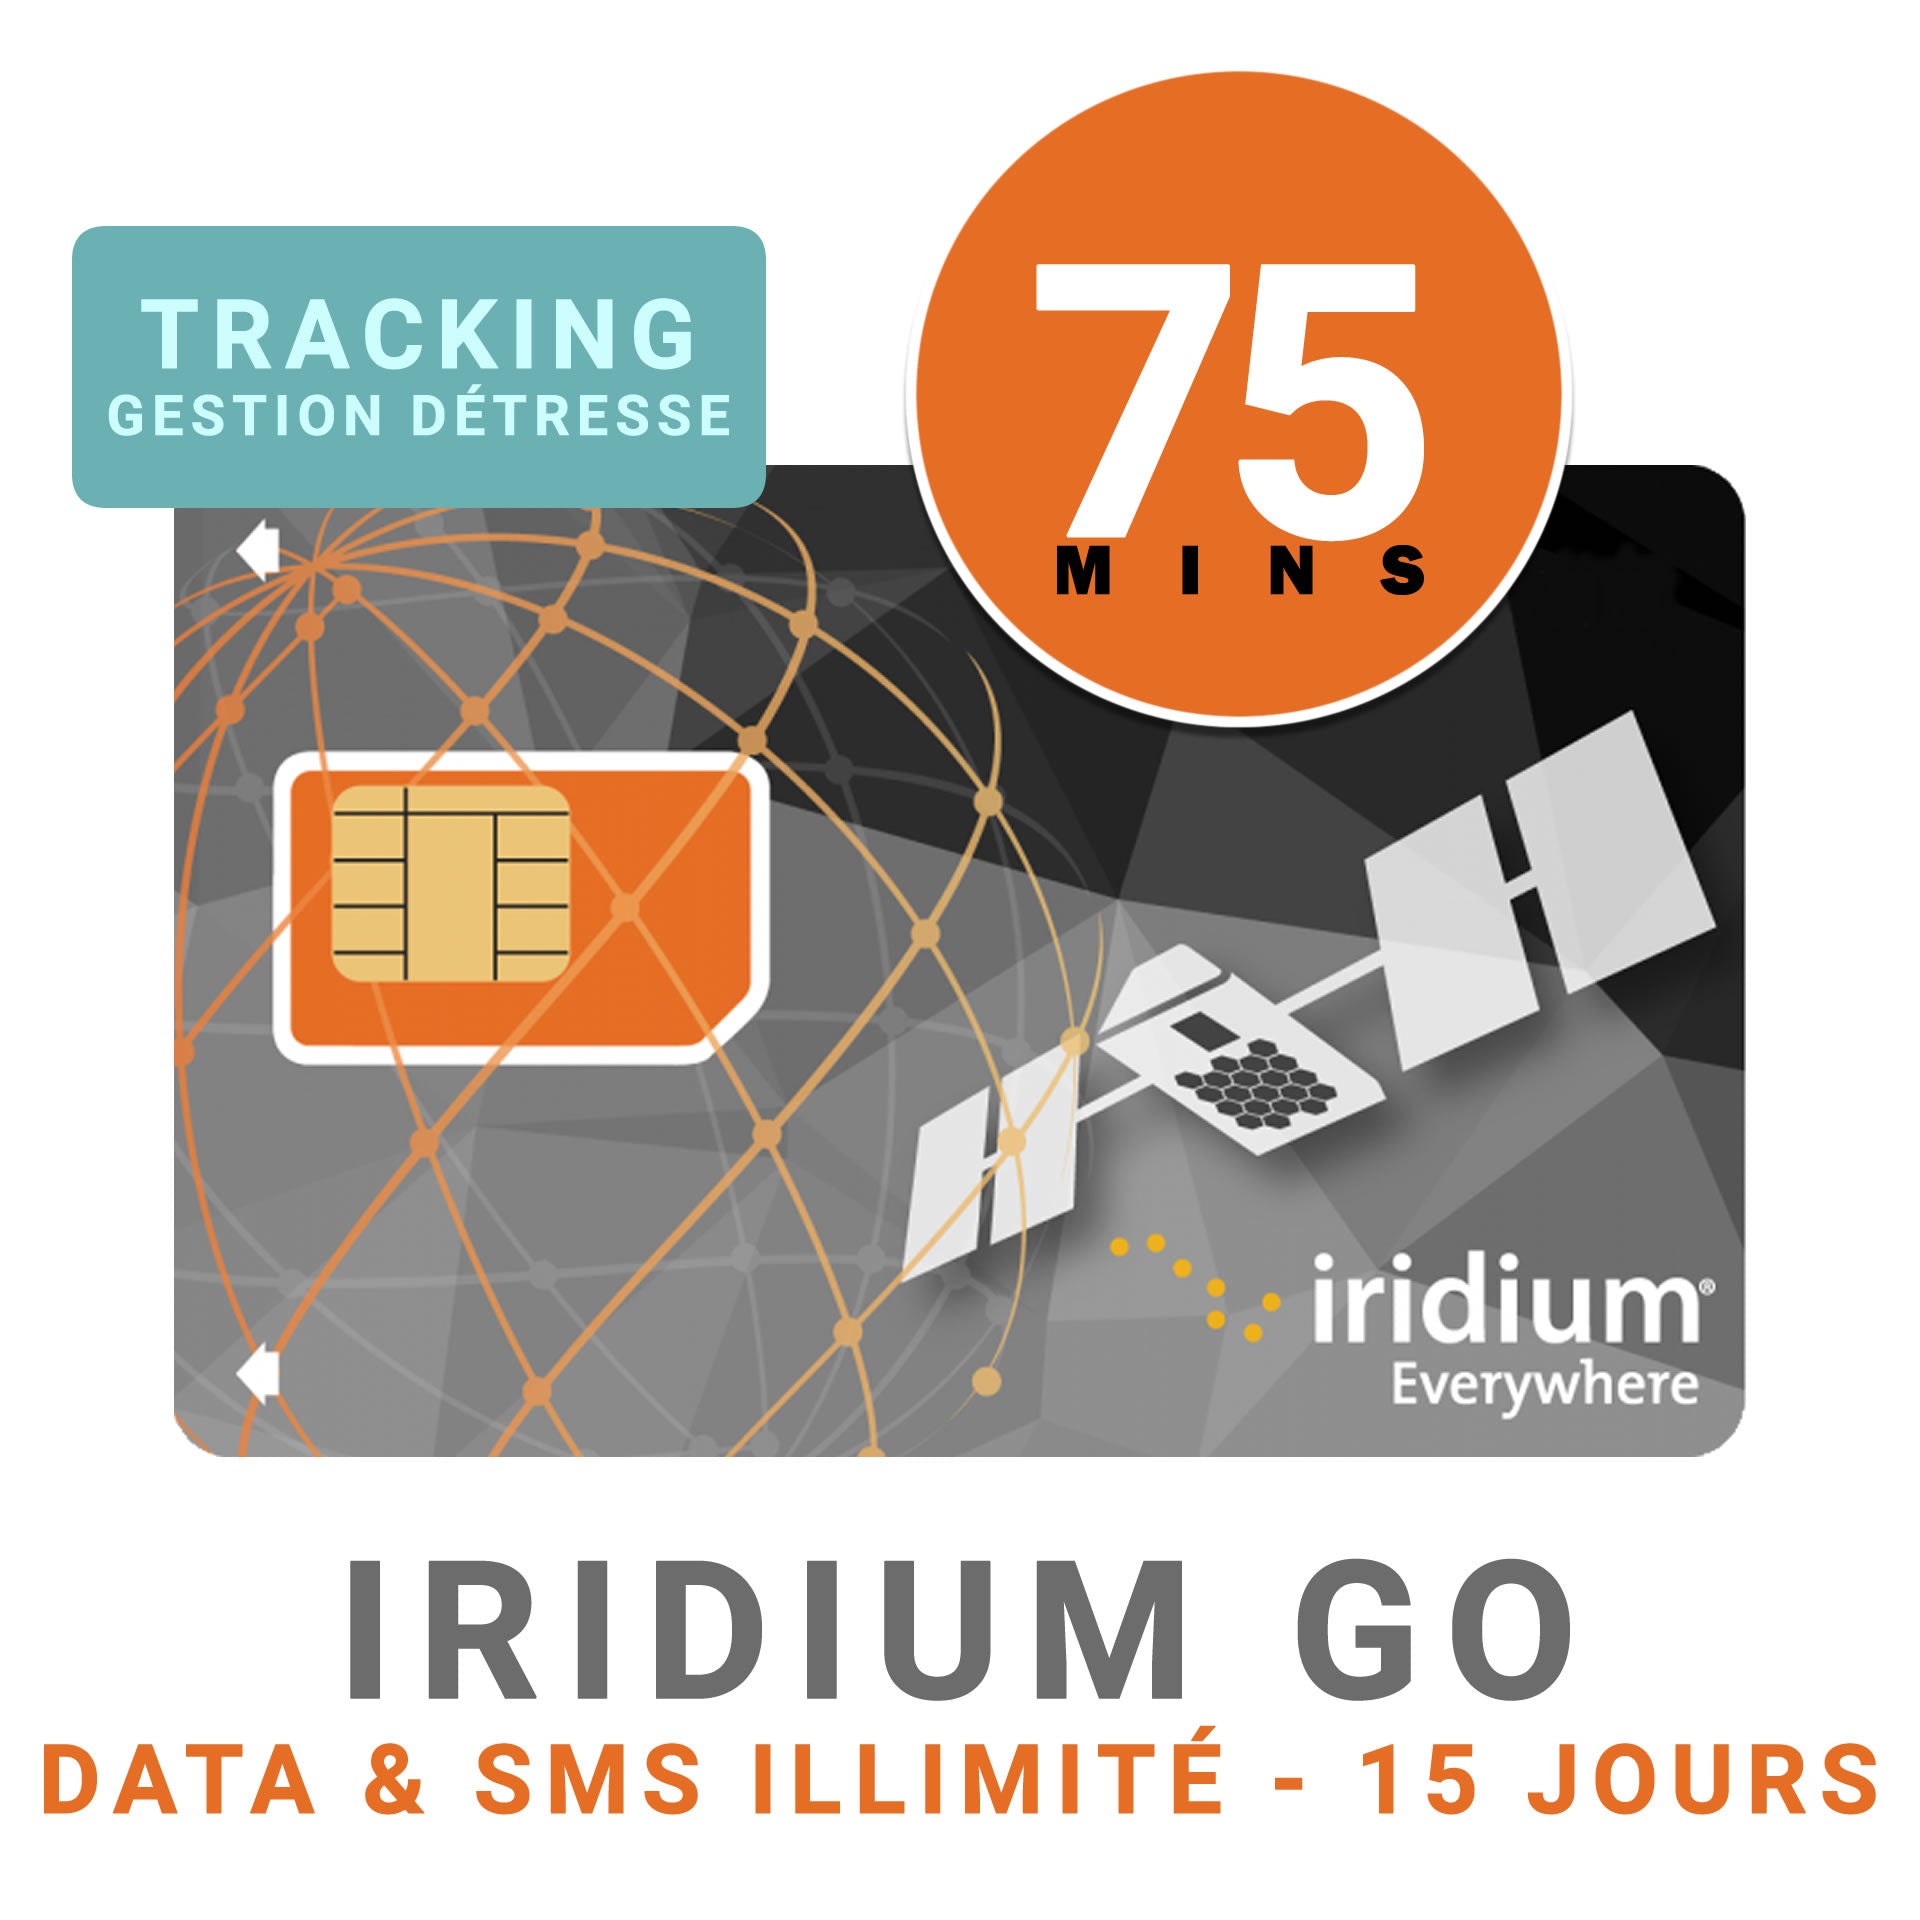 Abbonamento di 45 giorni - IRIDIUM GO DATA - Illimitato + 225 MIN DI VOCE + Tracciamento